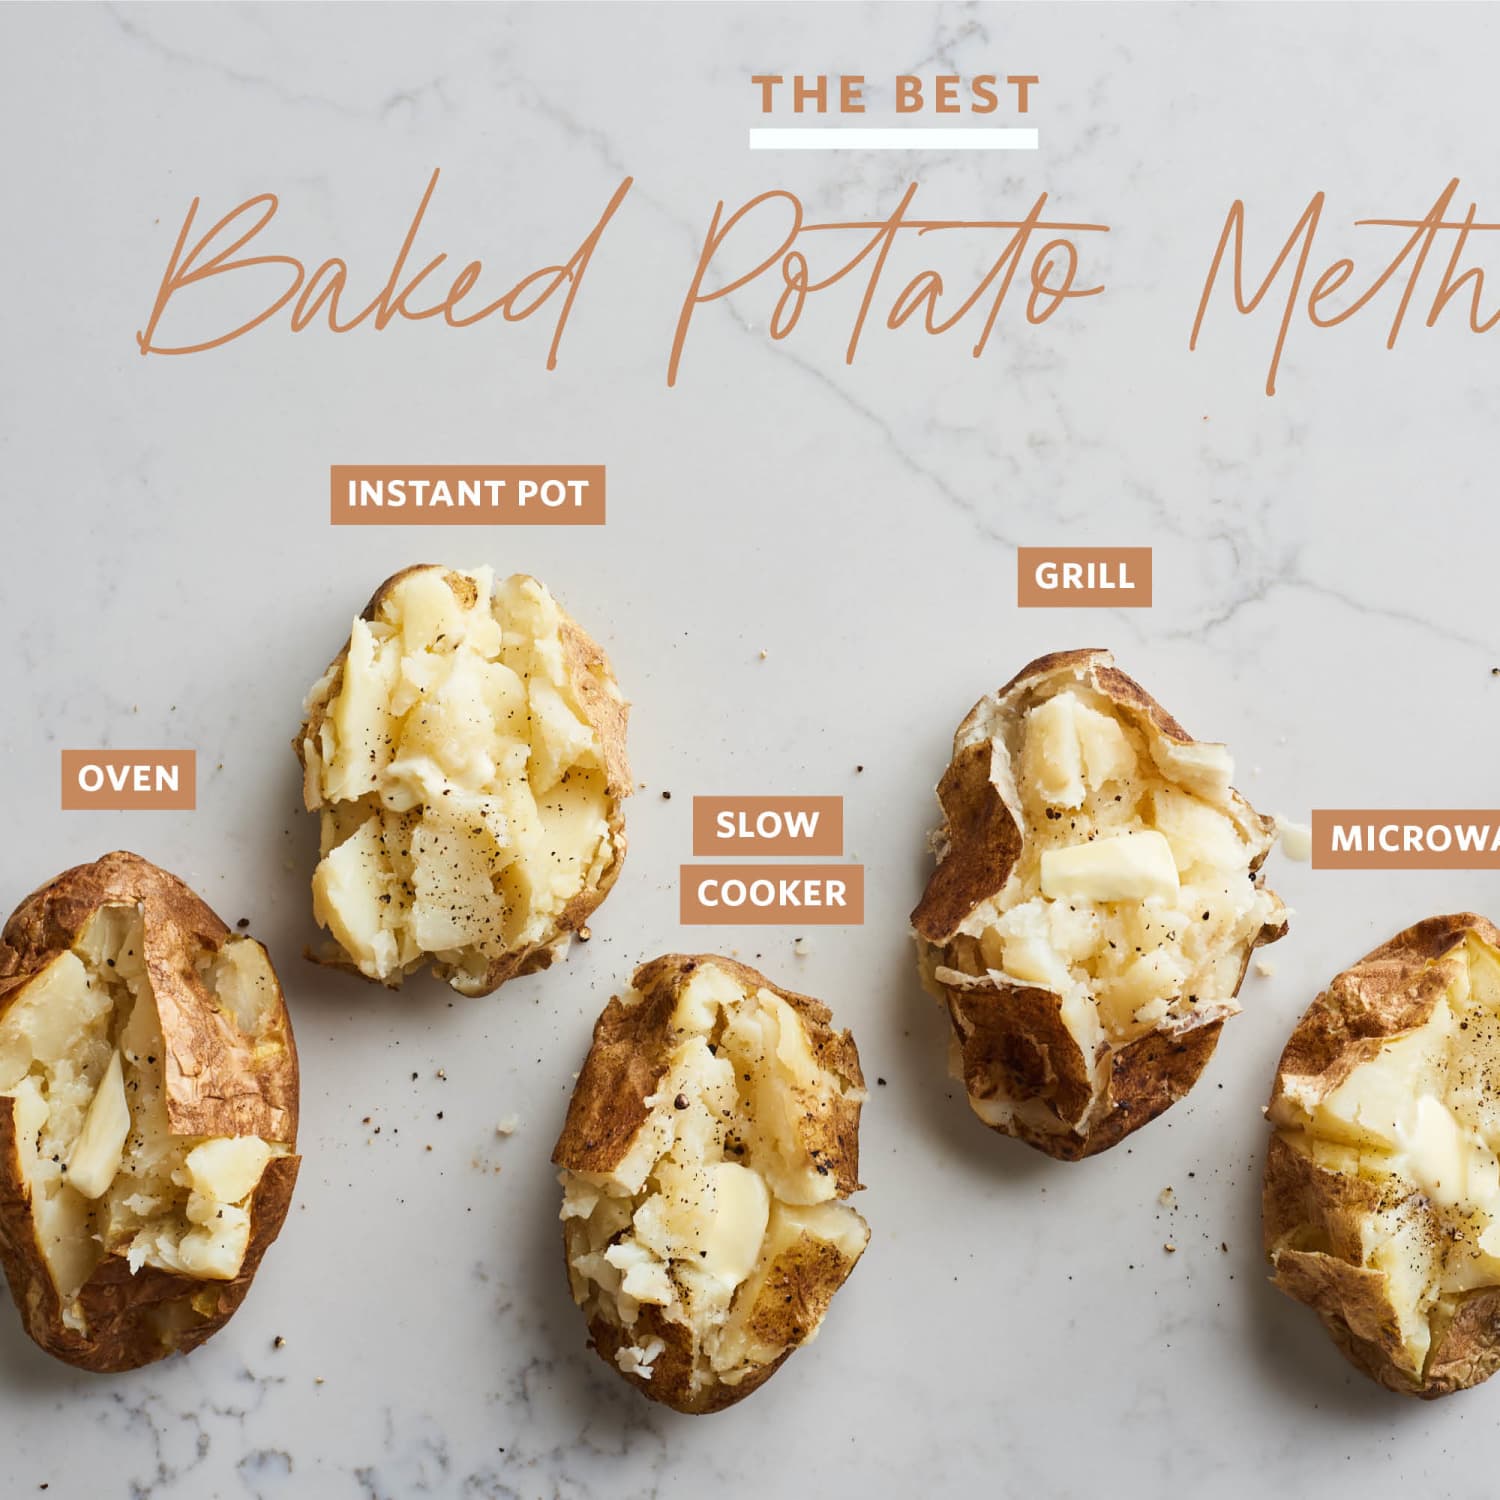 How To Bake a Potato